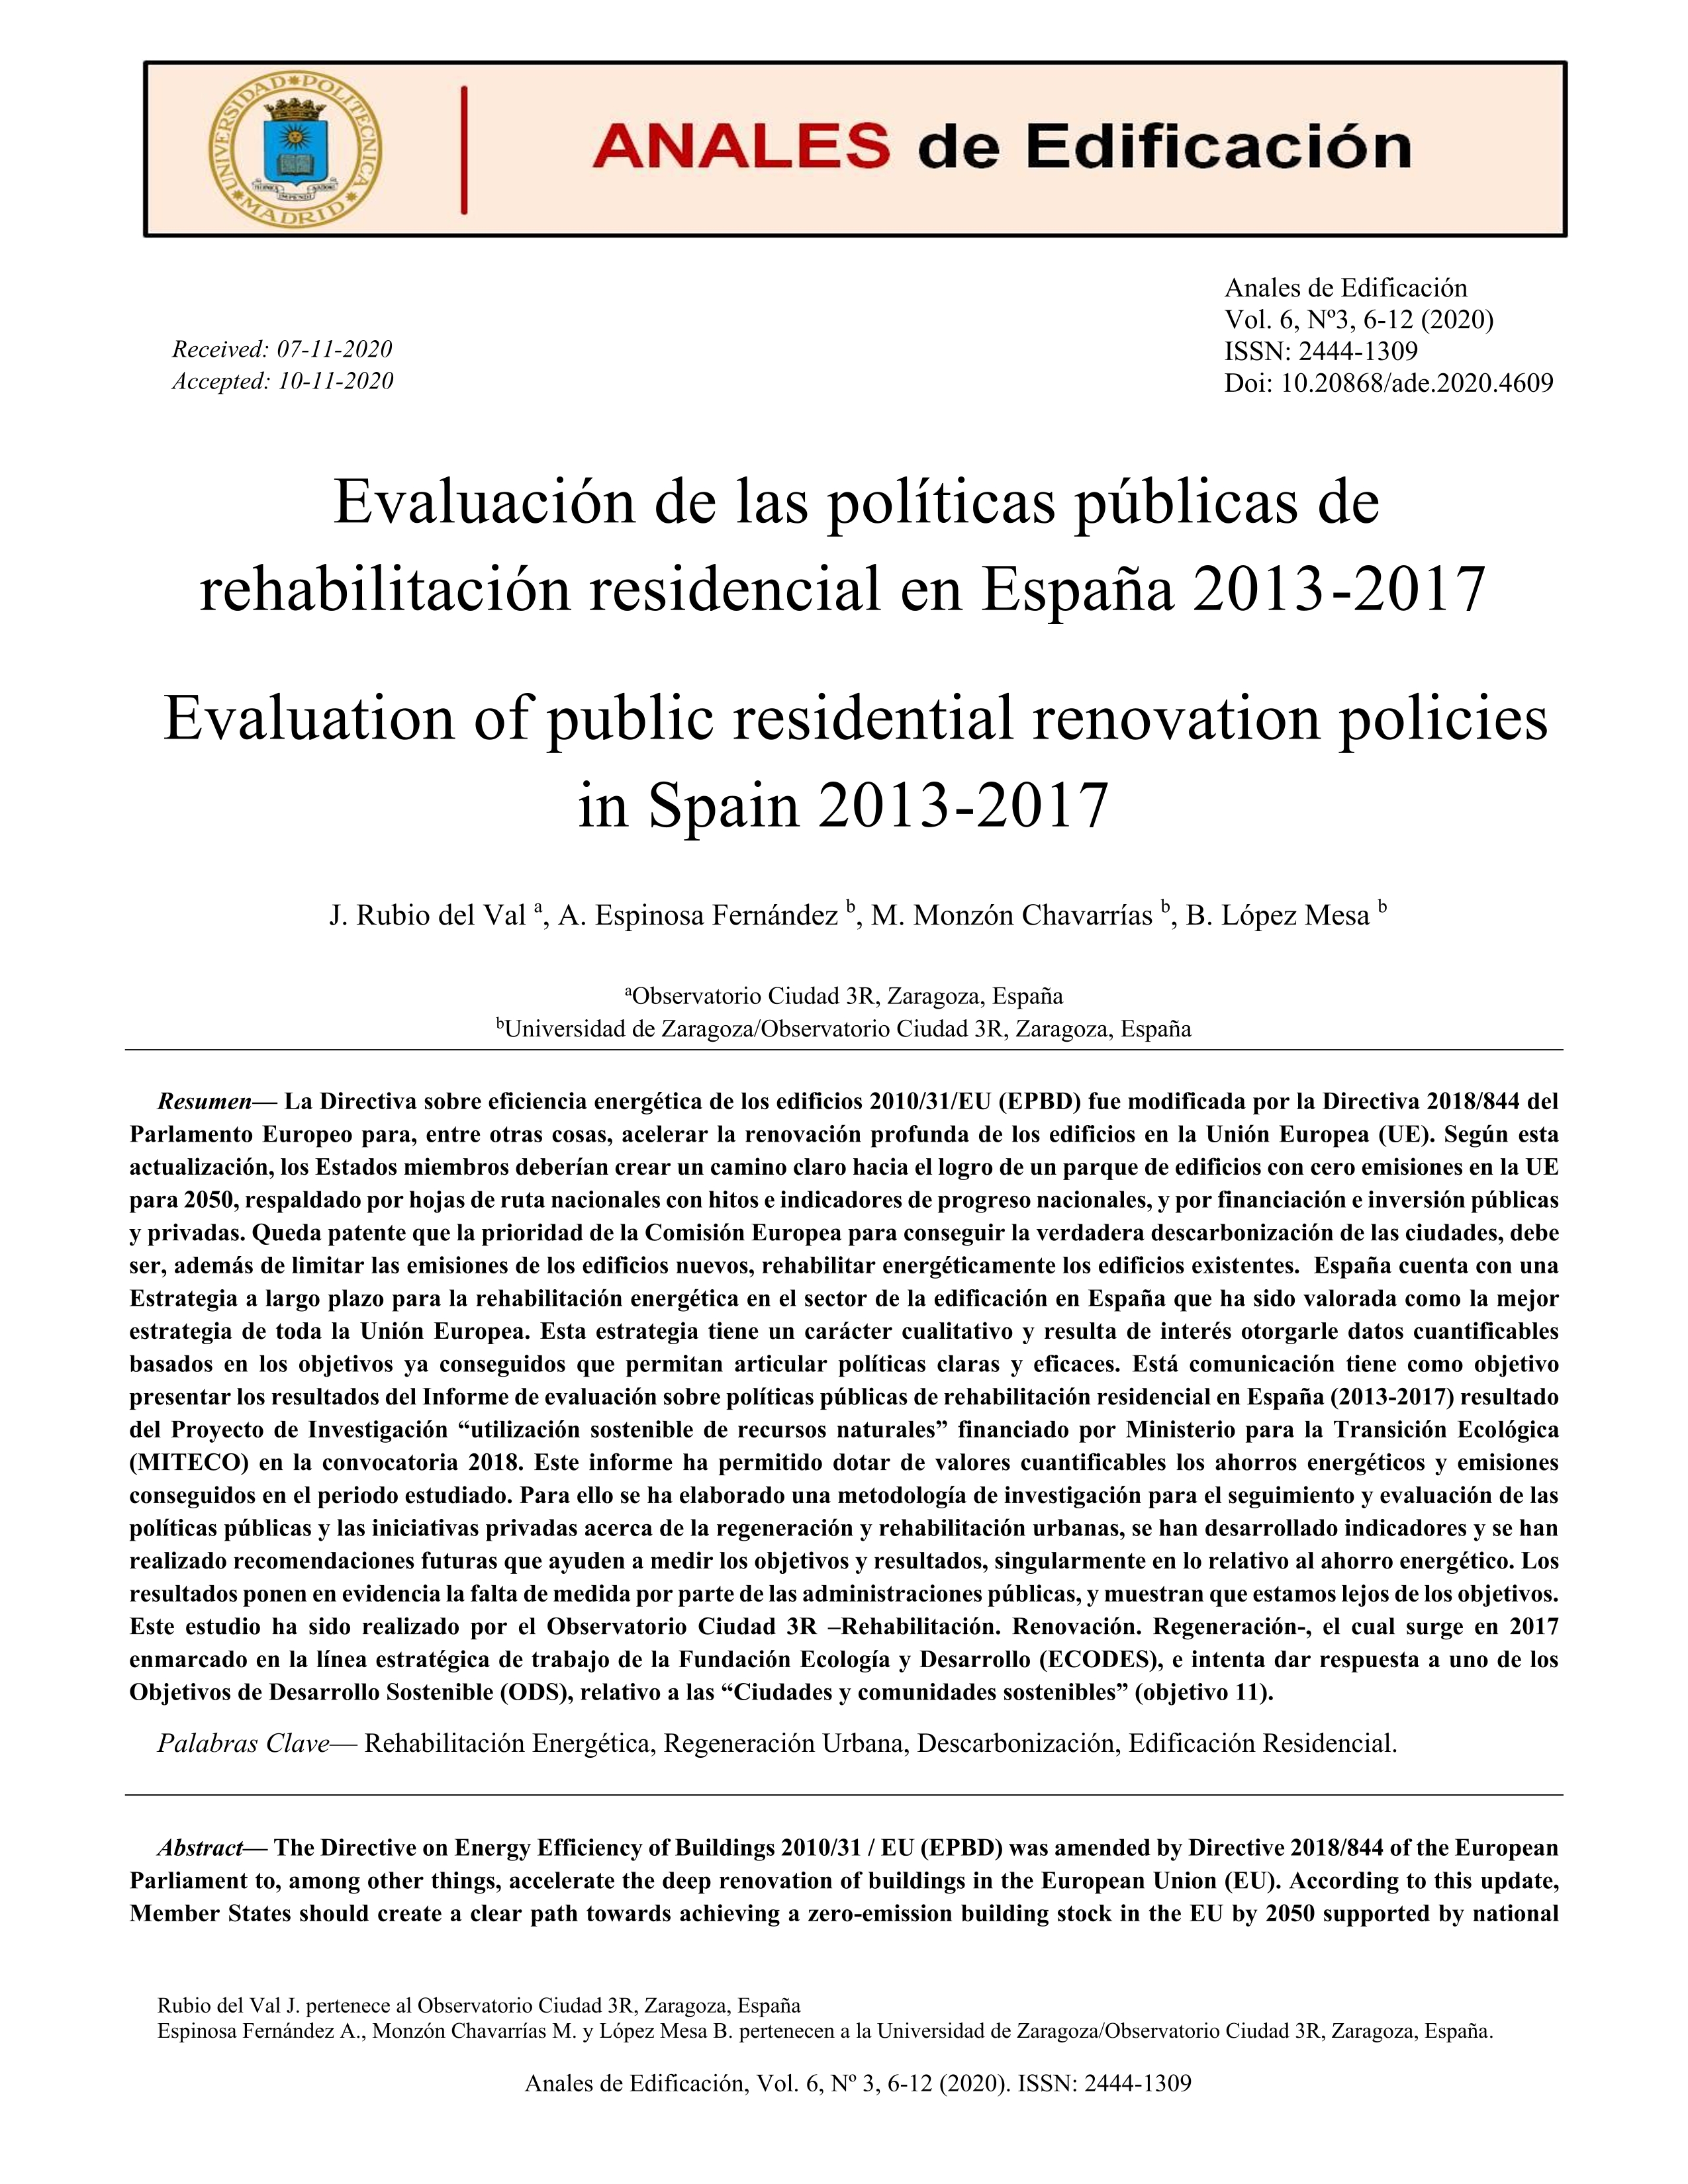 Evaluación de las políticas públicas de rehabilitación residencial en España 2013-2017 = Evaluation of public residential renovation policies in Spain 2013-2017